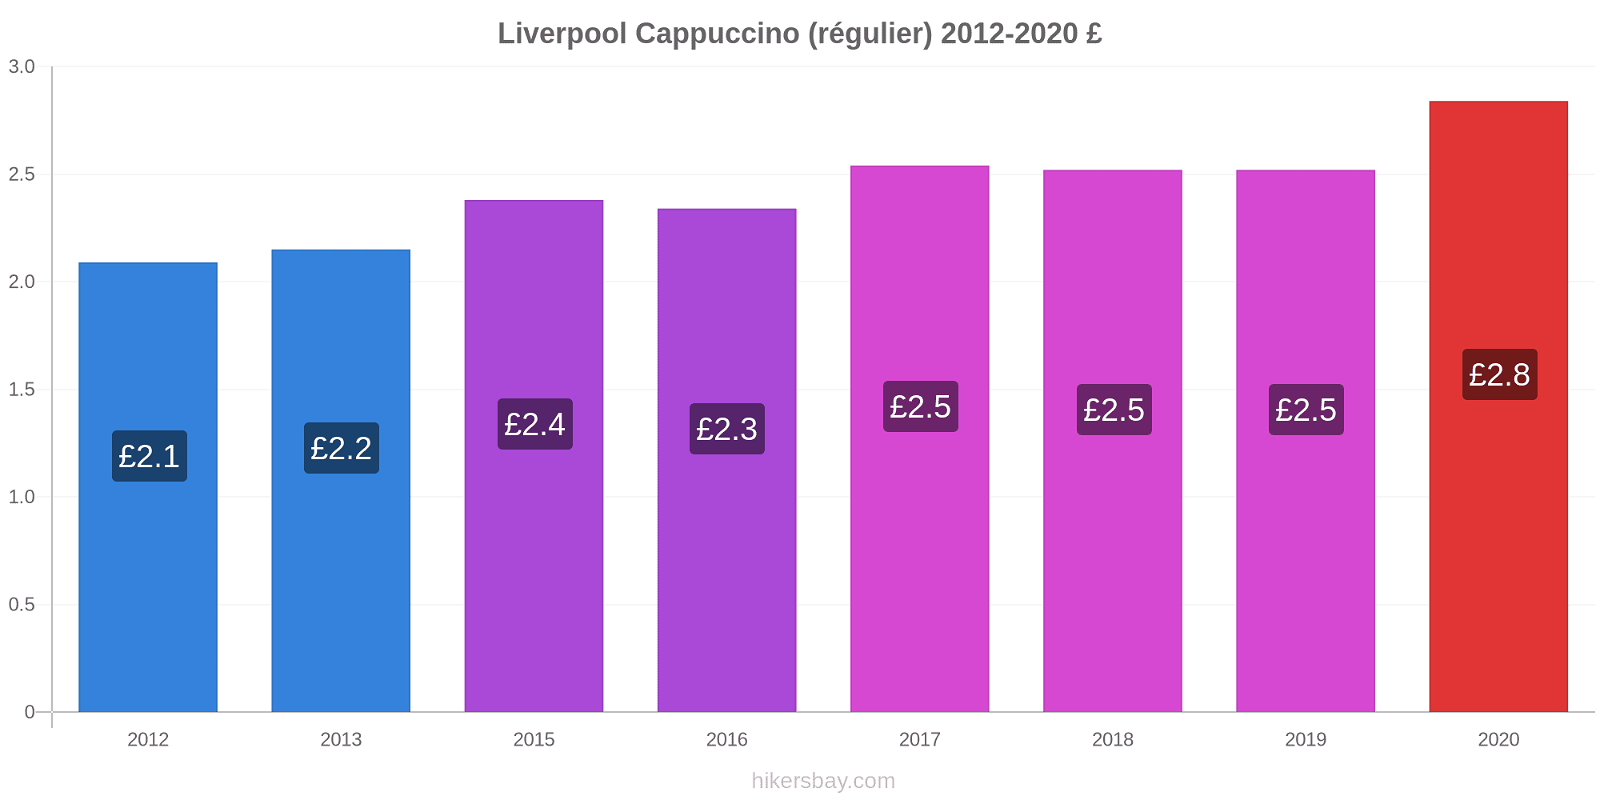 Liverpool changements de prix Cappuccino (régulier) hikersbay.com